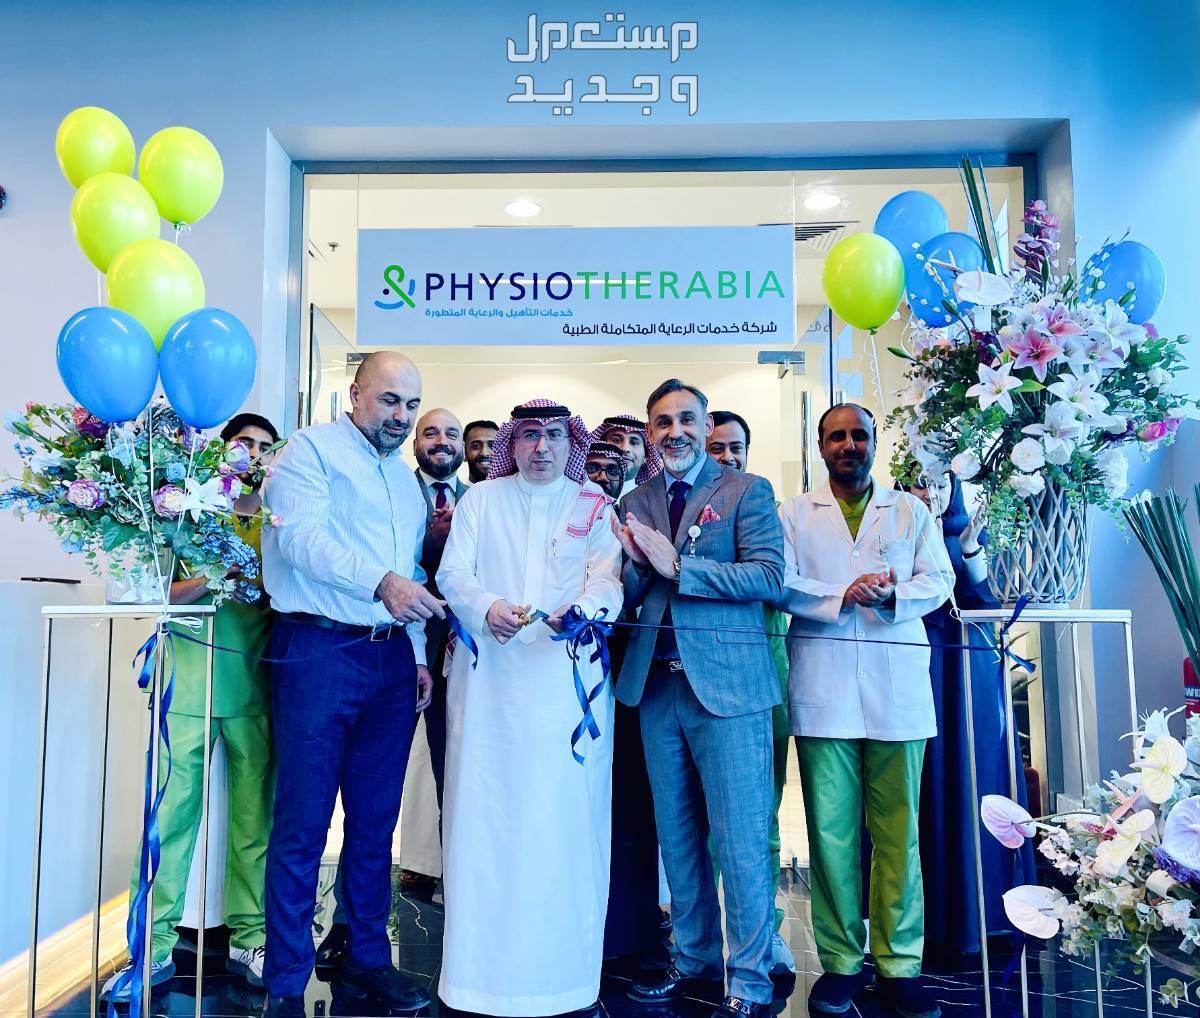 برجيل القابضة ولجام للرياضة تطلقان ثمانية مراكز  "فيزيوثيرابيا" جديدة للعلاج الطبيعي في المملكة العربية السعودية